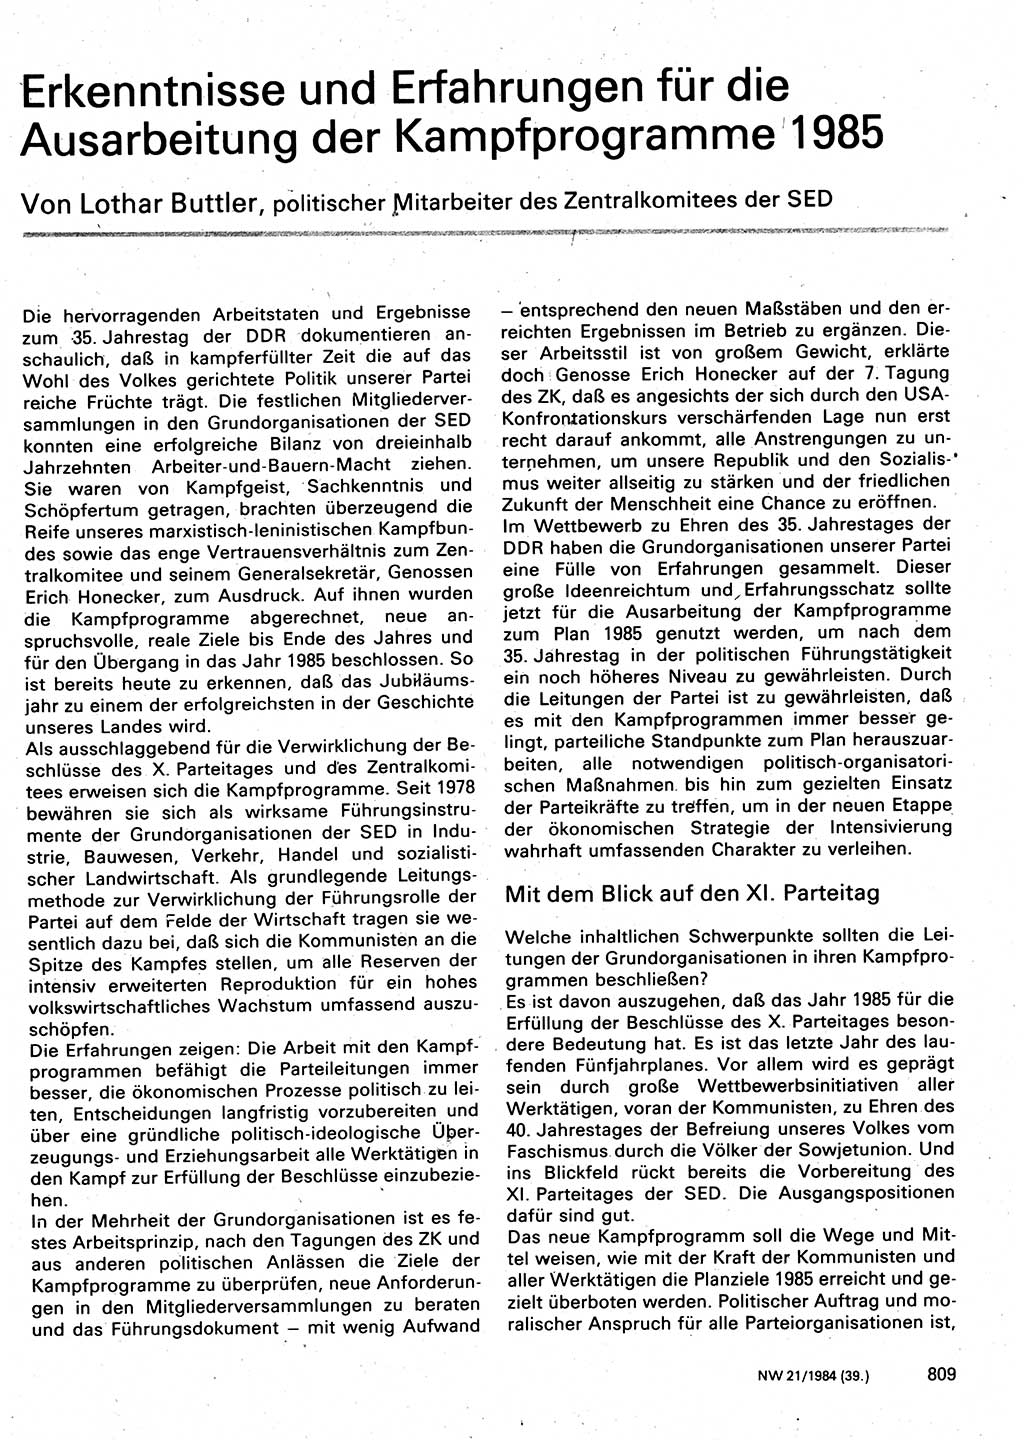 Neuer Weg (NW), Organ des Zentralkomitees (ZK) der SED (Sozialistische Einheitspartei Deutschlands) für Fragen des Parteilebens, 39. Jahrgang [Deutsche Demokratische Republik (DDR)] 1984, Seite 809 (NW ZK SED DDR 1984, S. 809)